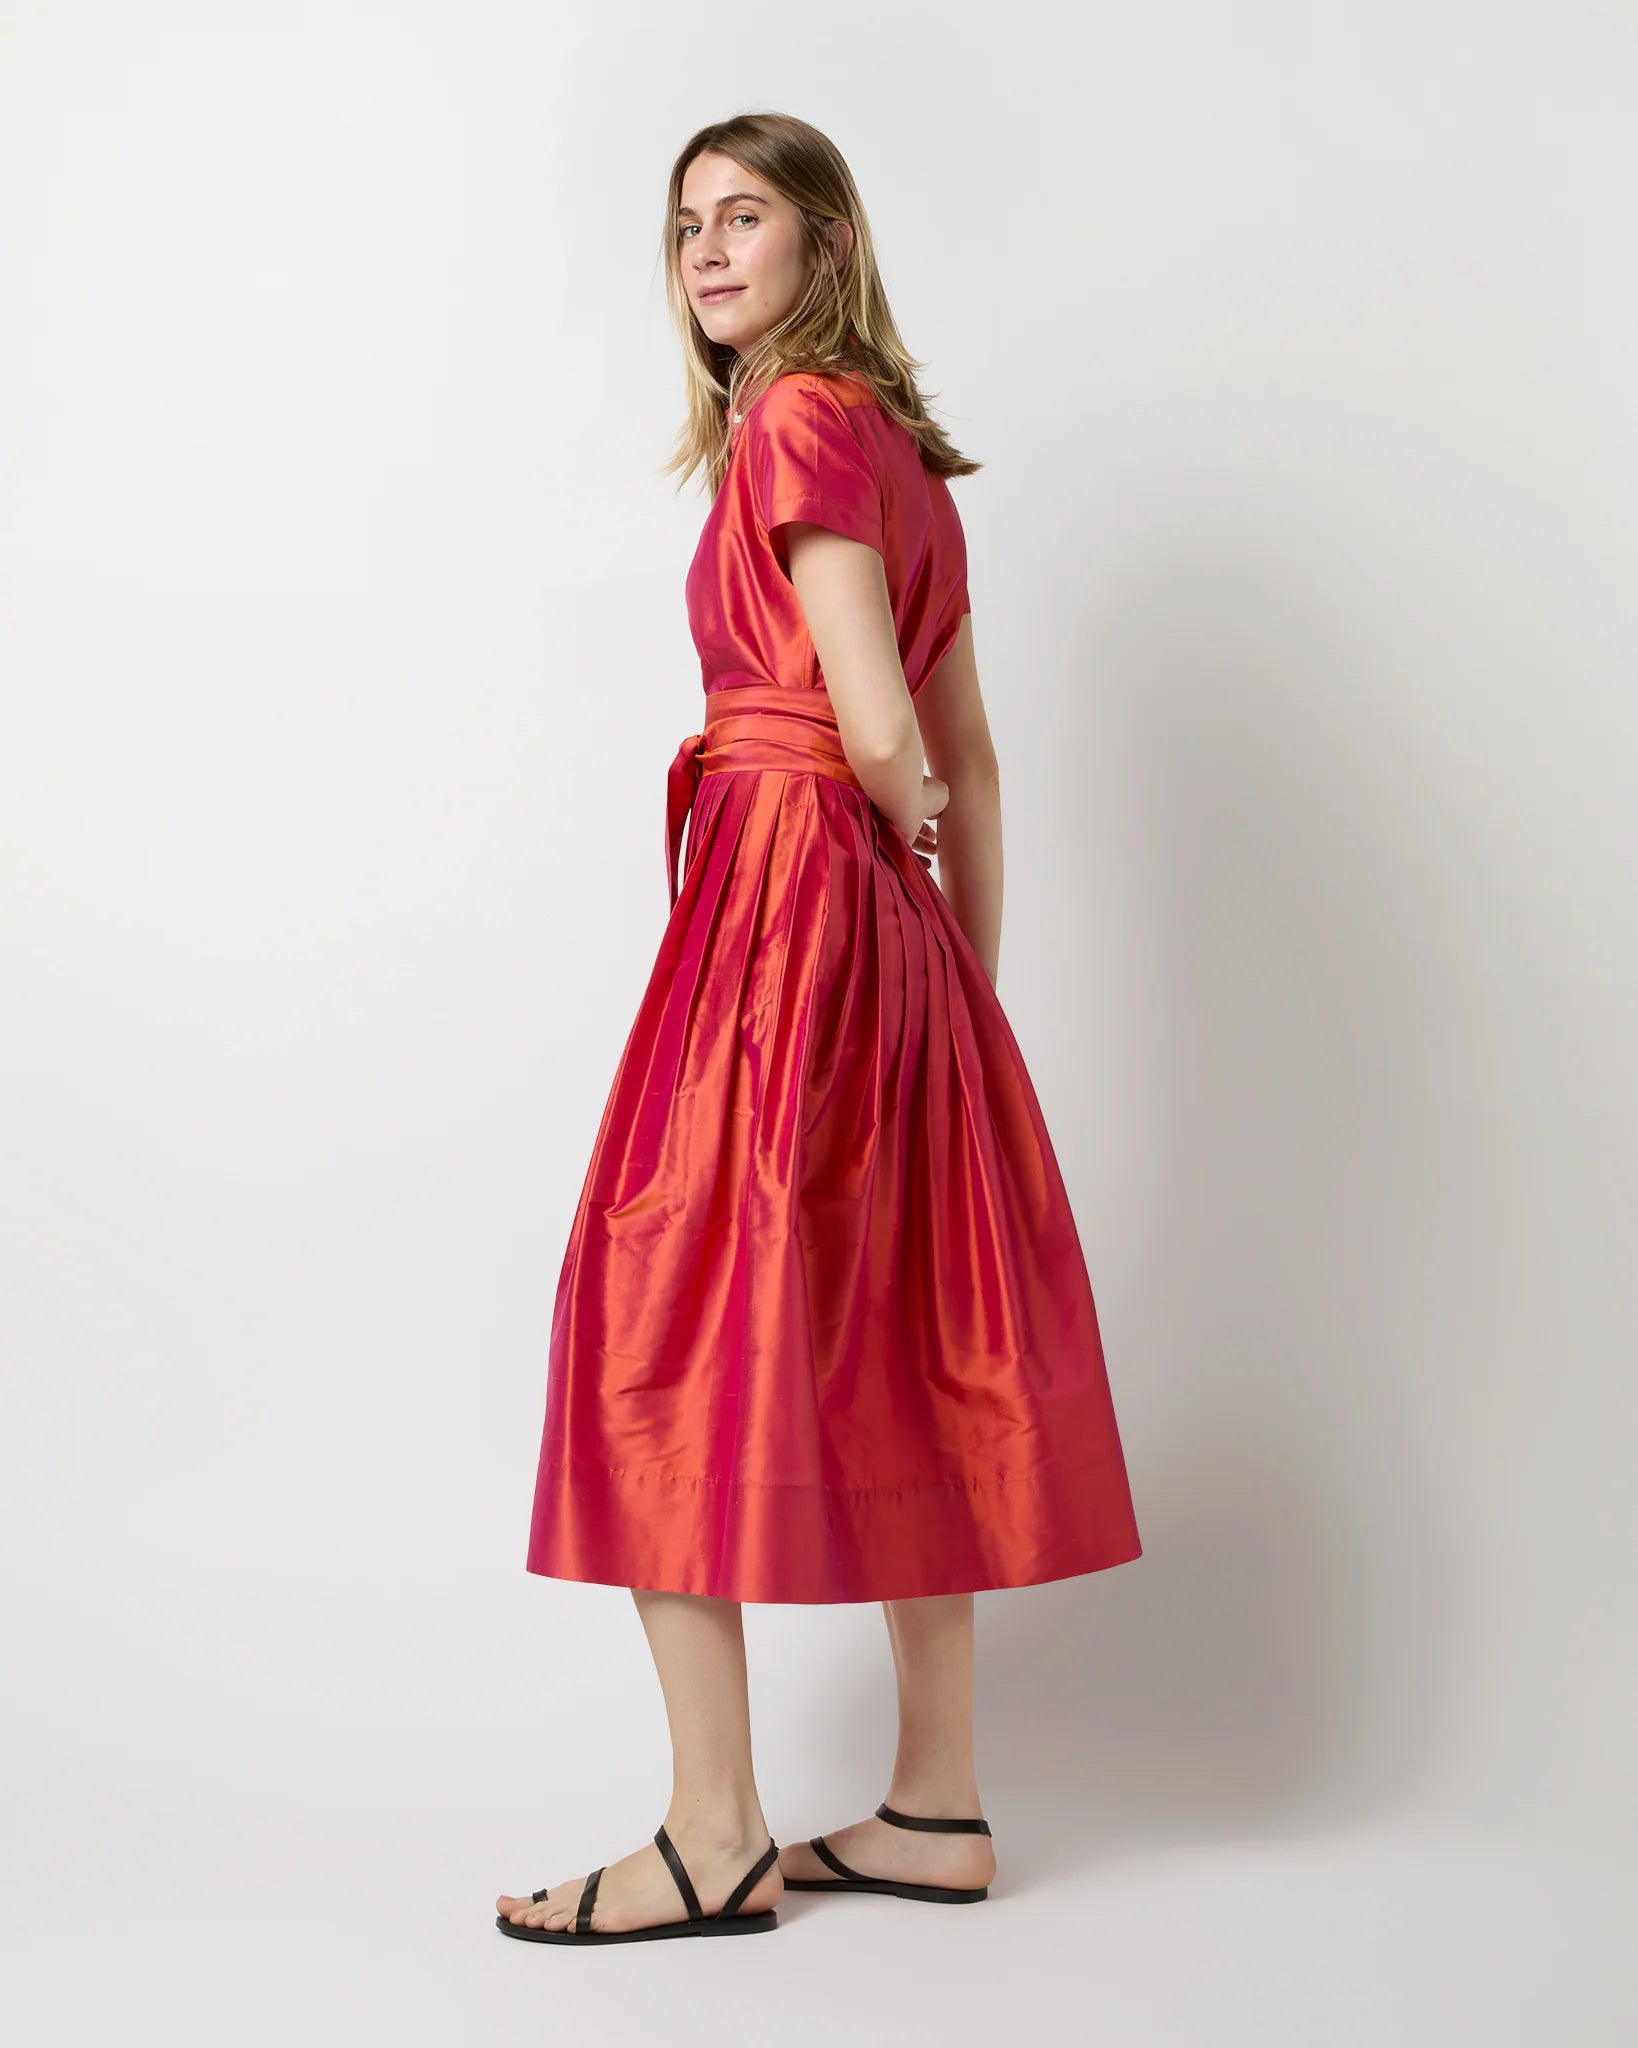 Ann Mashburn Short Sleeved Classic Shirtwaist Dress Iridescent Silk Shantung